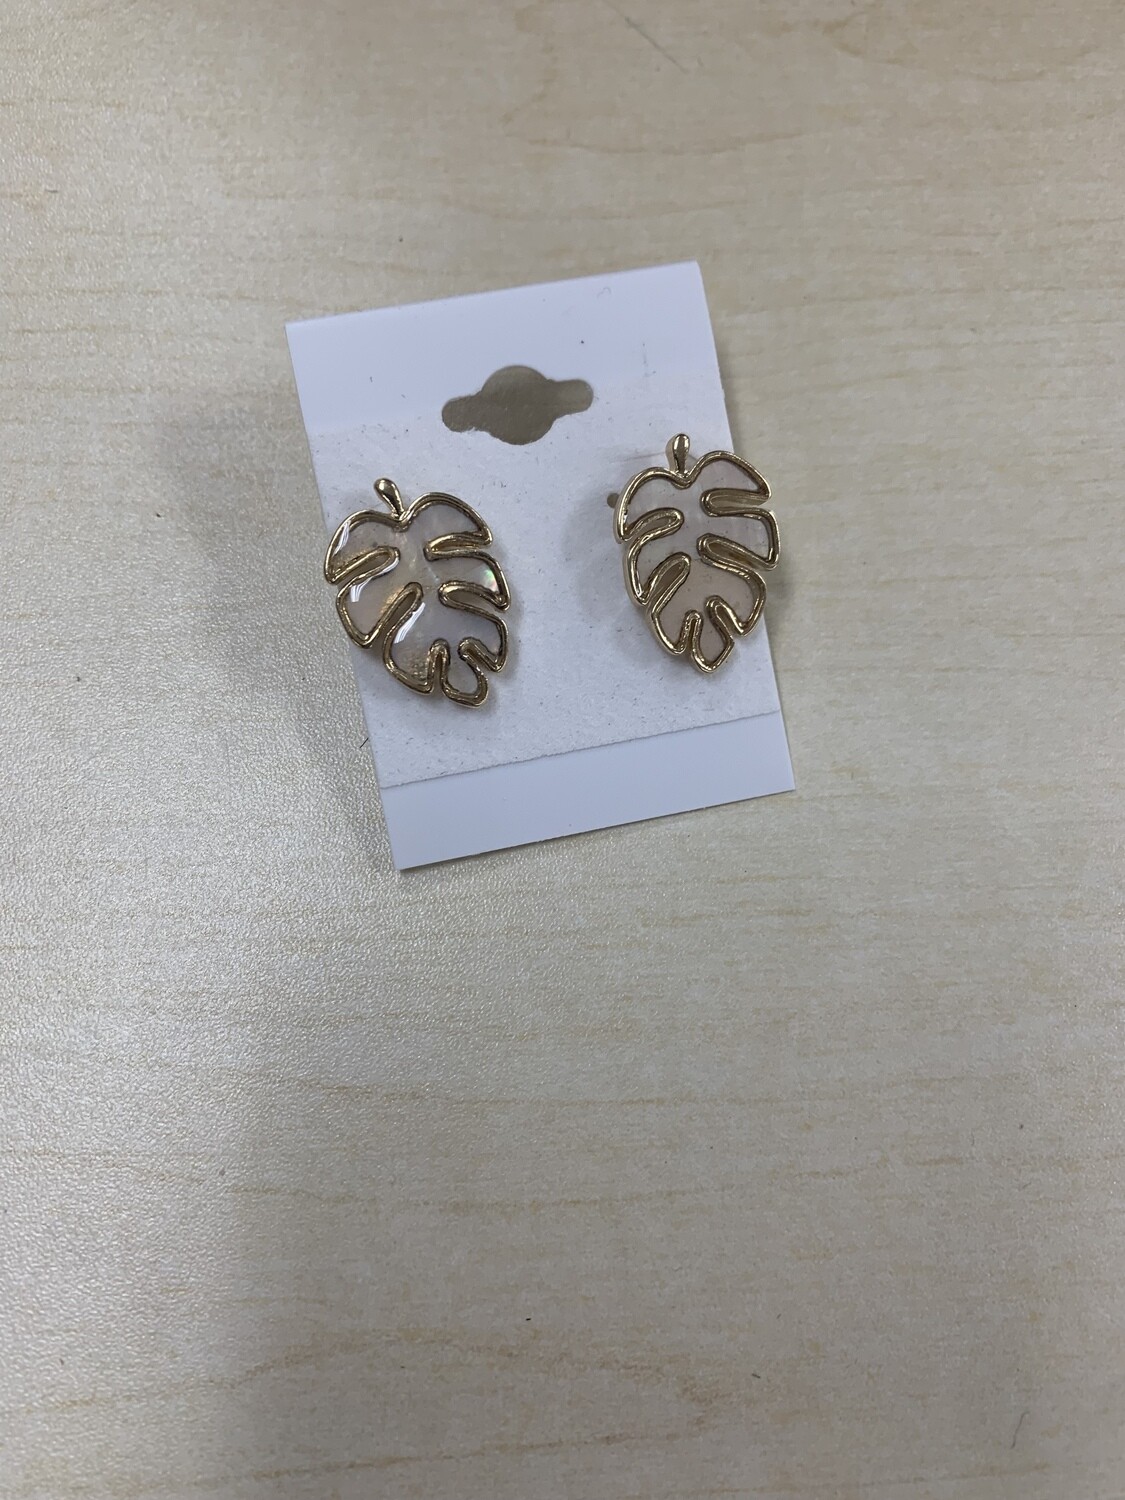 Opal Leaf Earrings